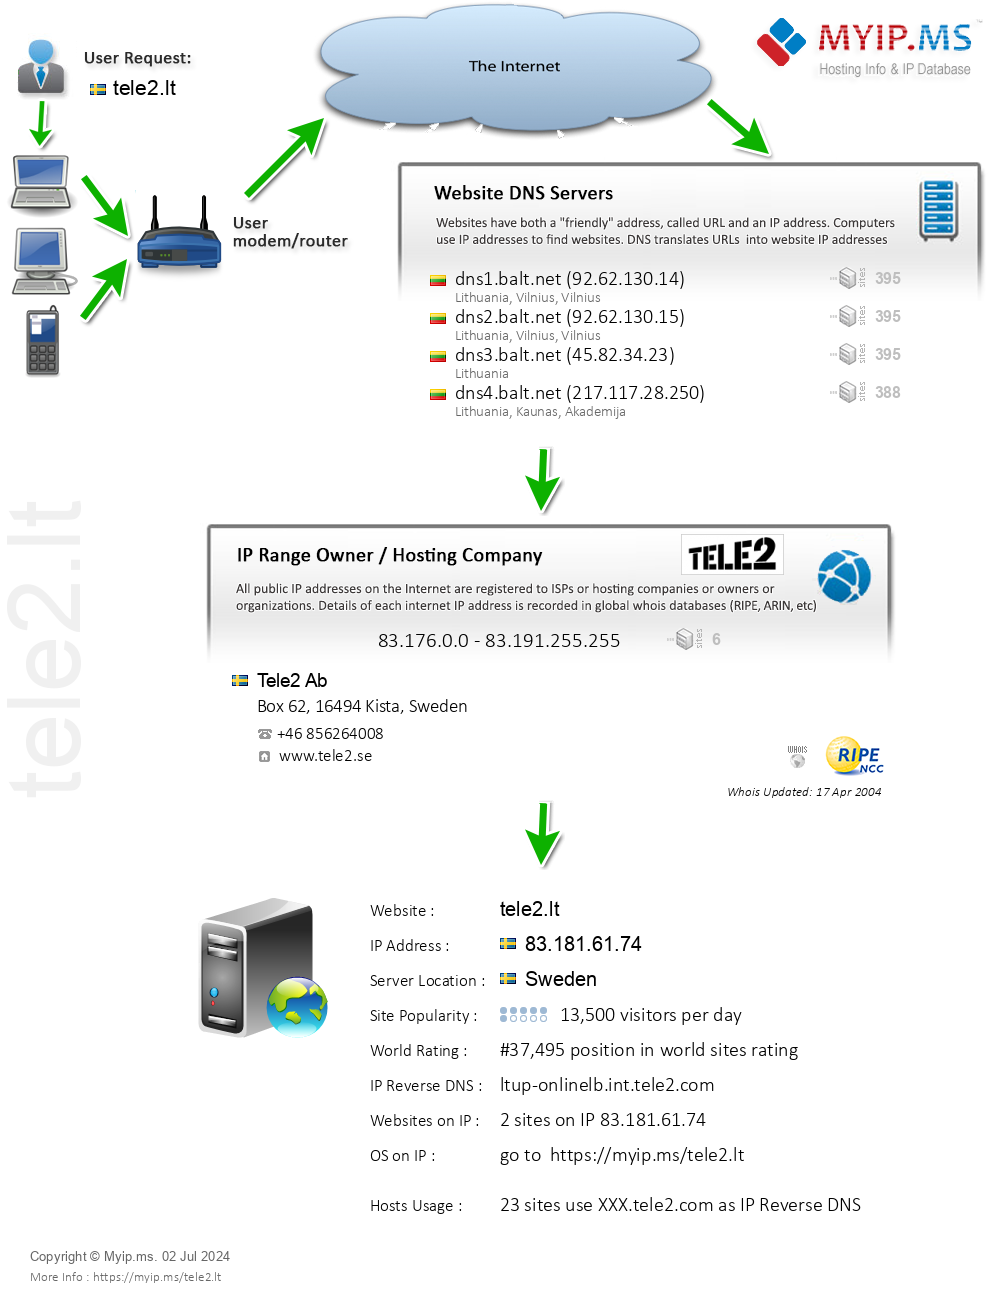 Tele2.lt - Website Hosting Visual IP Diagram